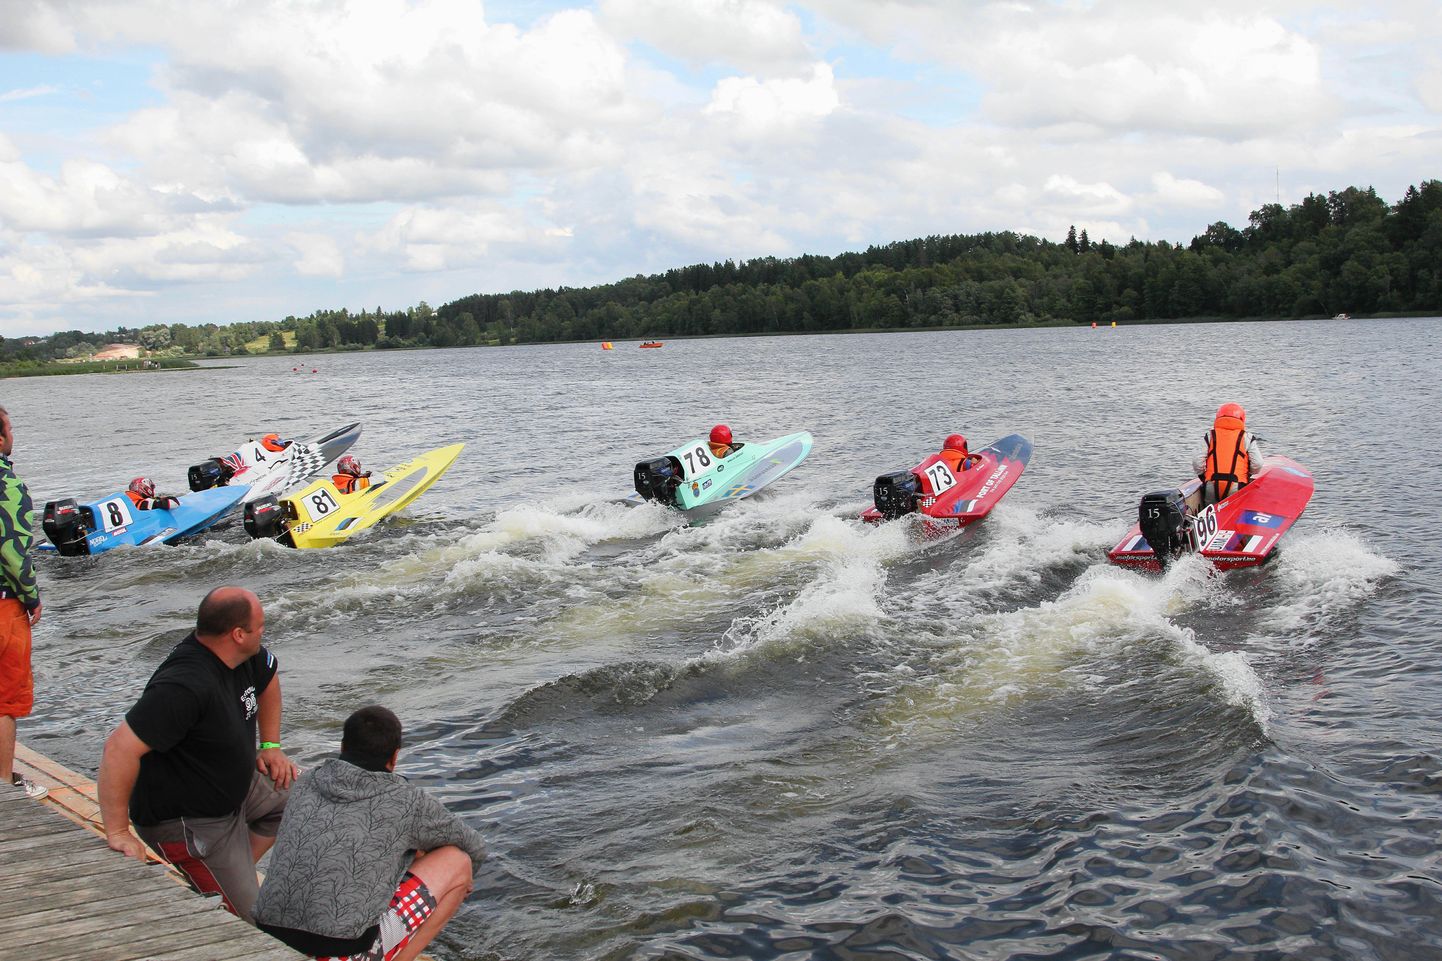 Pildil nädalavahetusel toimunud veemotospordi võistlus Viljandi järvel.